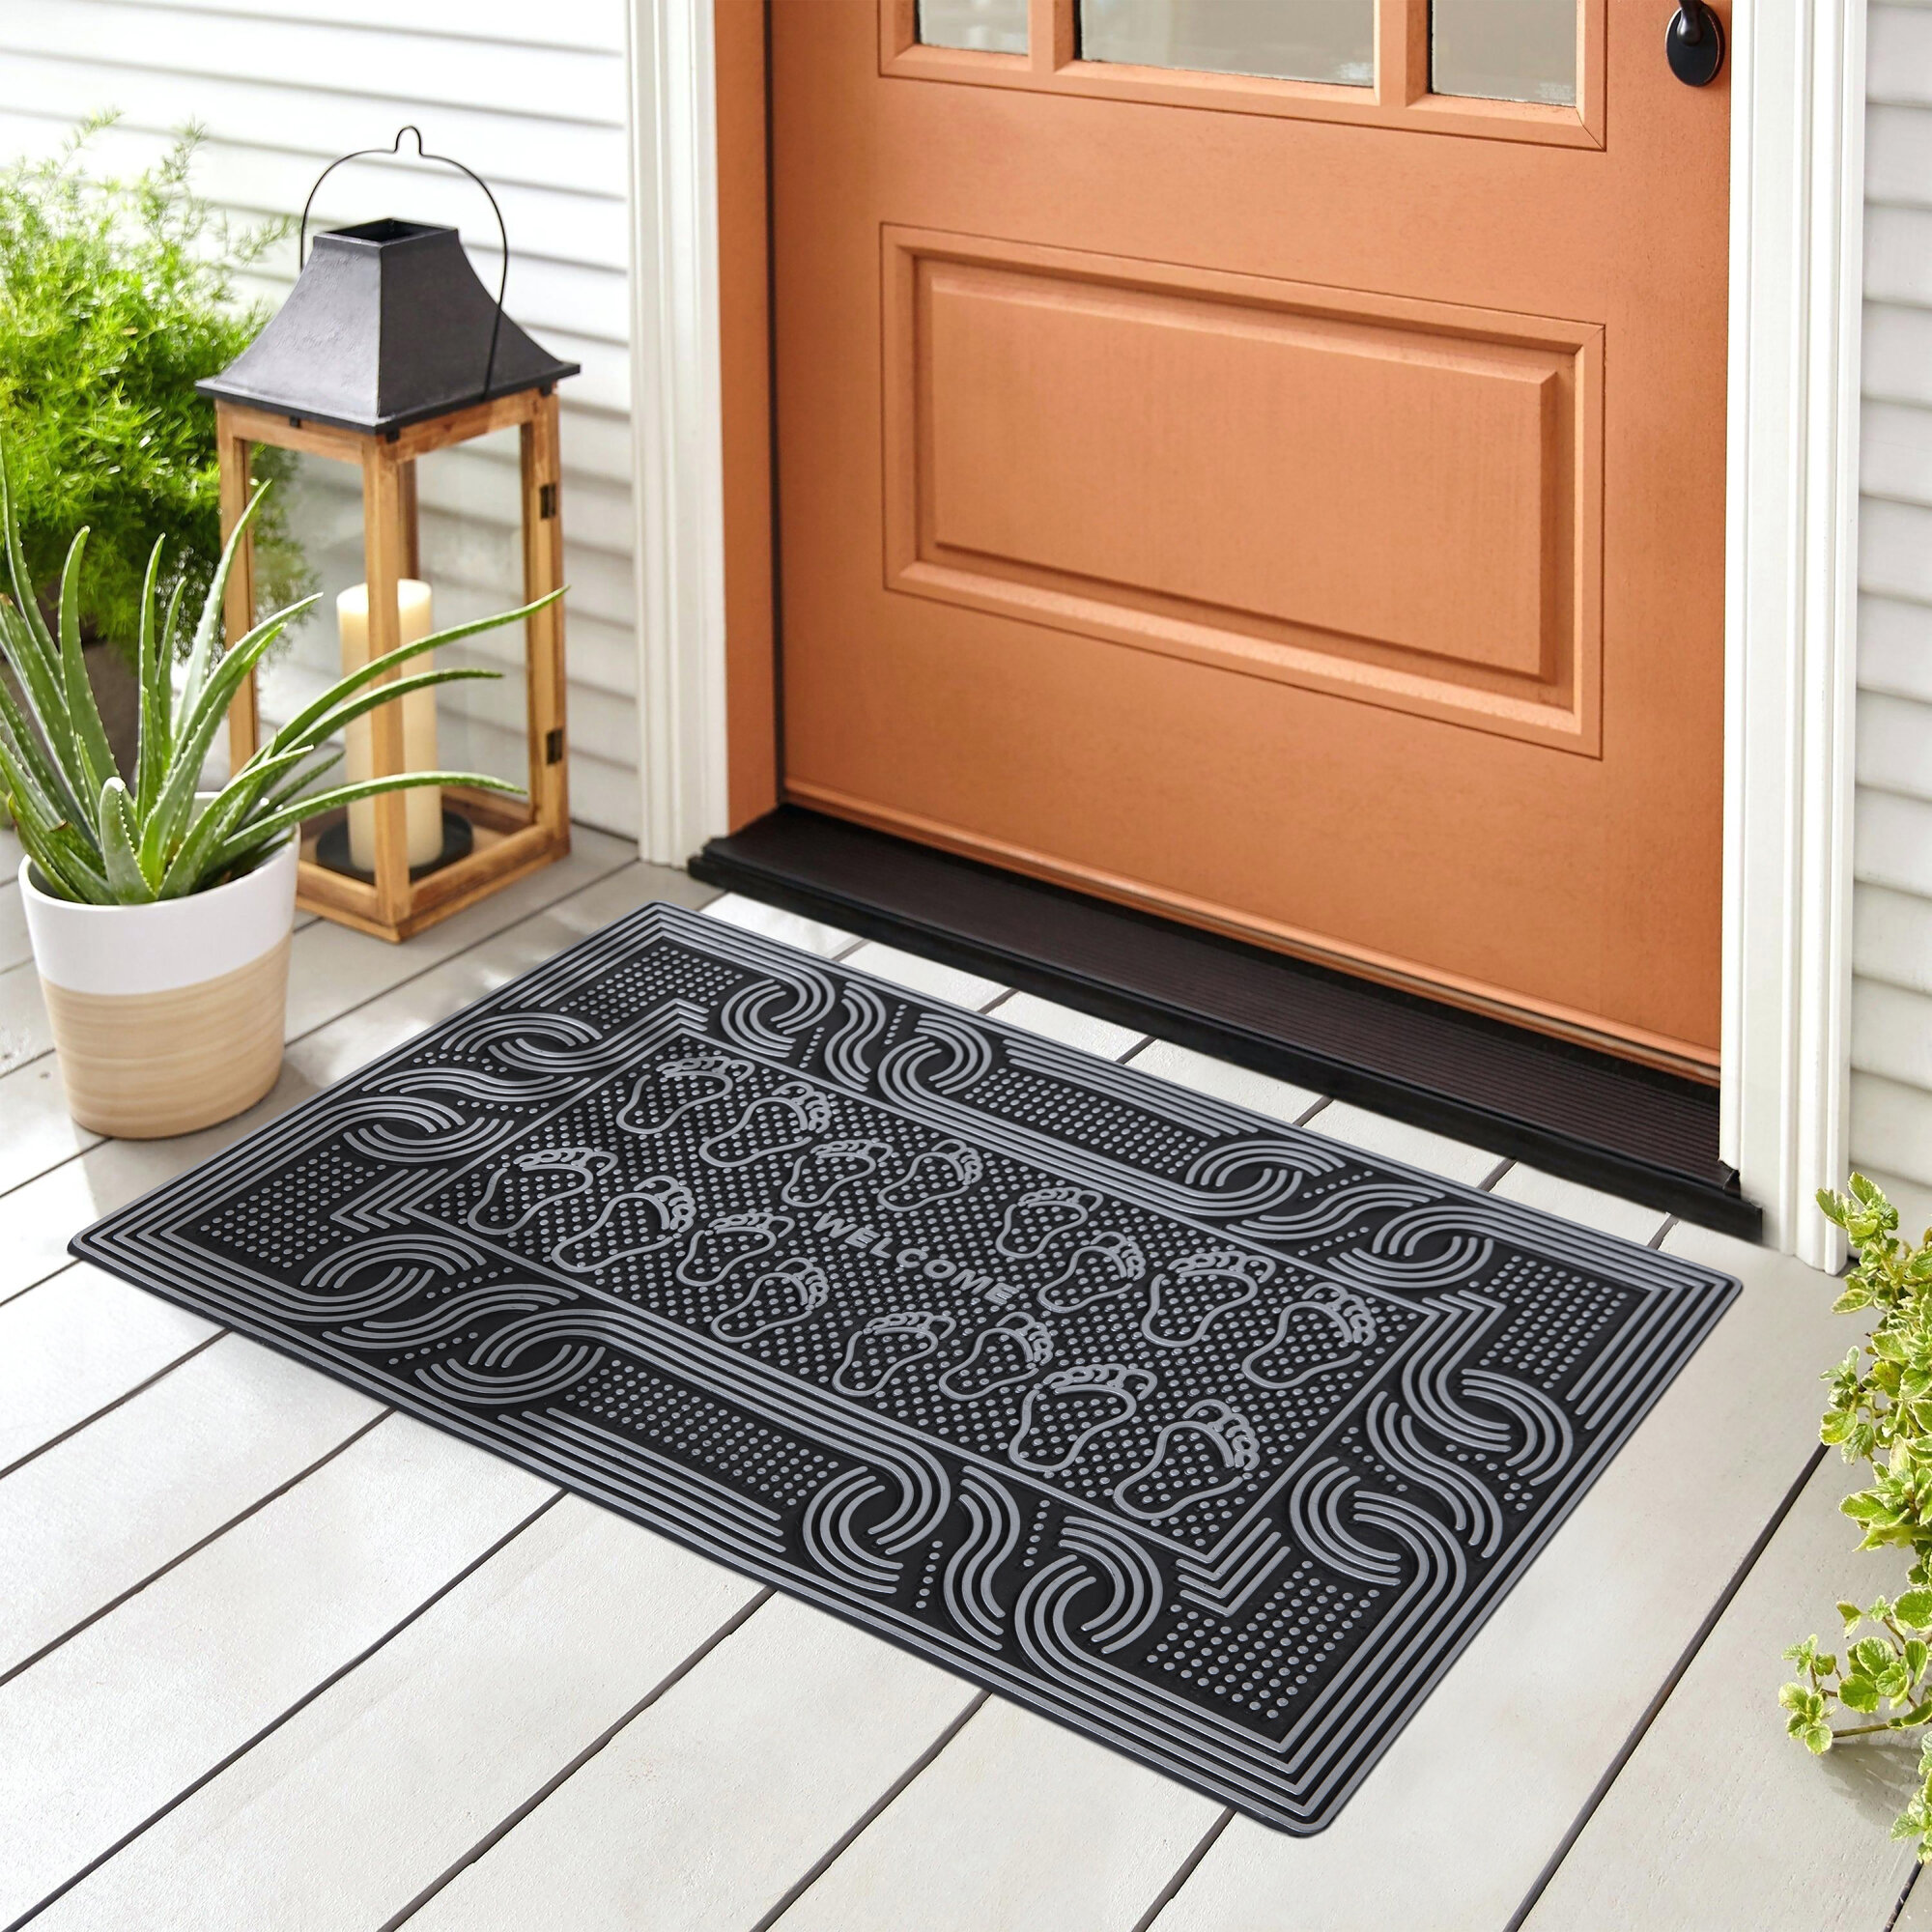 Abstract Art Doormat Welcome Mat Heavy Duty Non-Slip Entryway Rugs Indoor  Outdoor Entrance Mat Low Profile Shoe Scraper Carpet